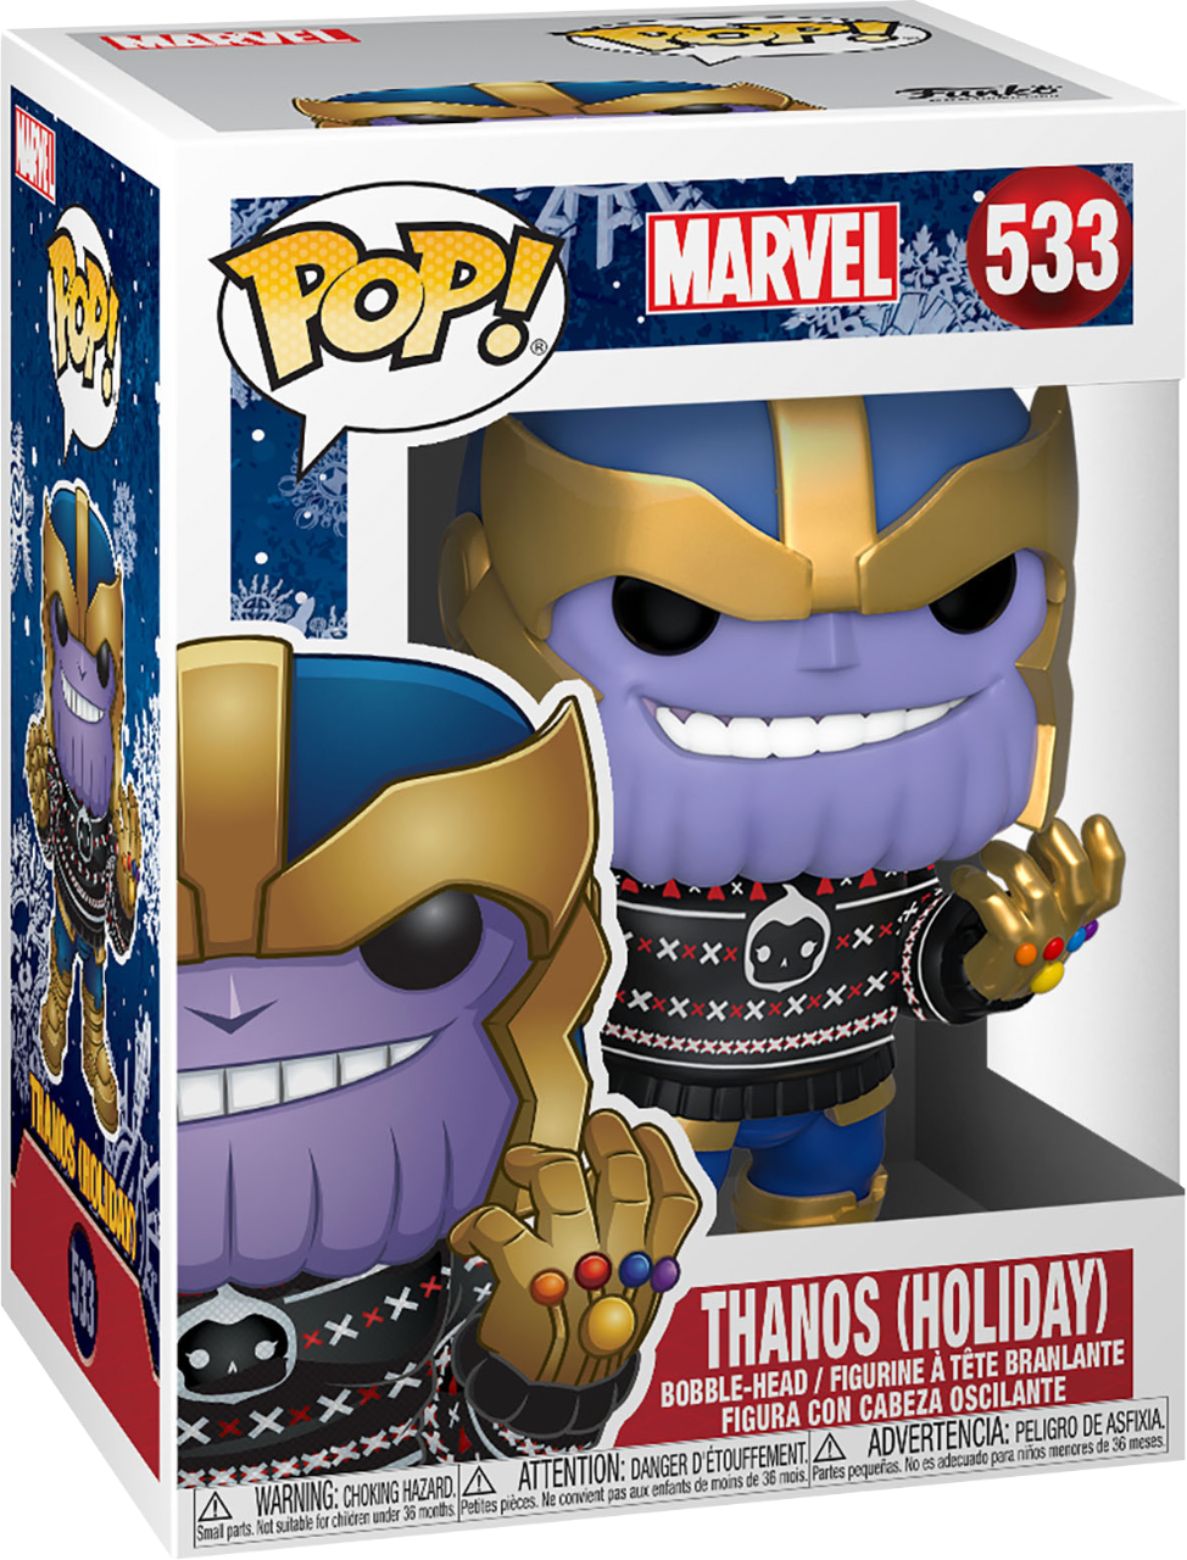 ACC NUEVO Importación USA Funko-Pop Marvel Holiday Thanos Viny 